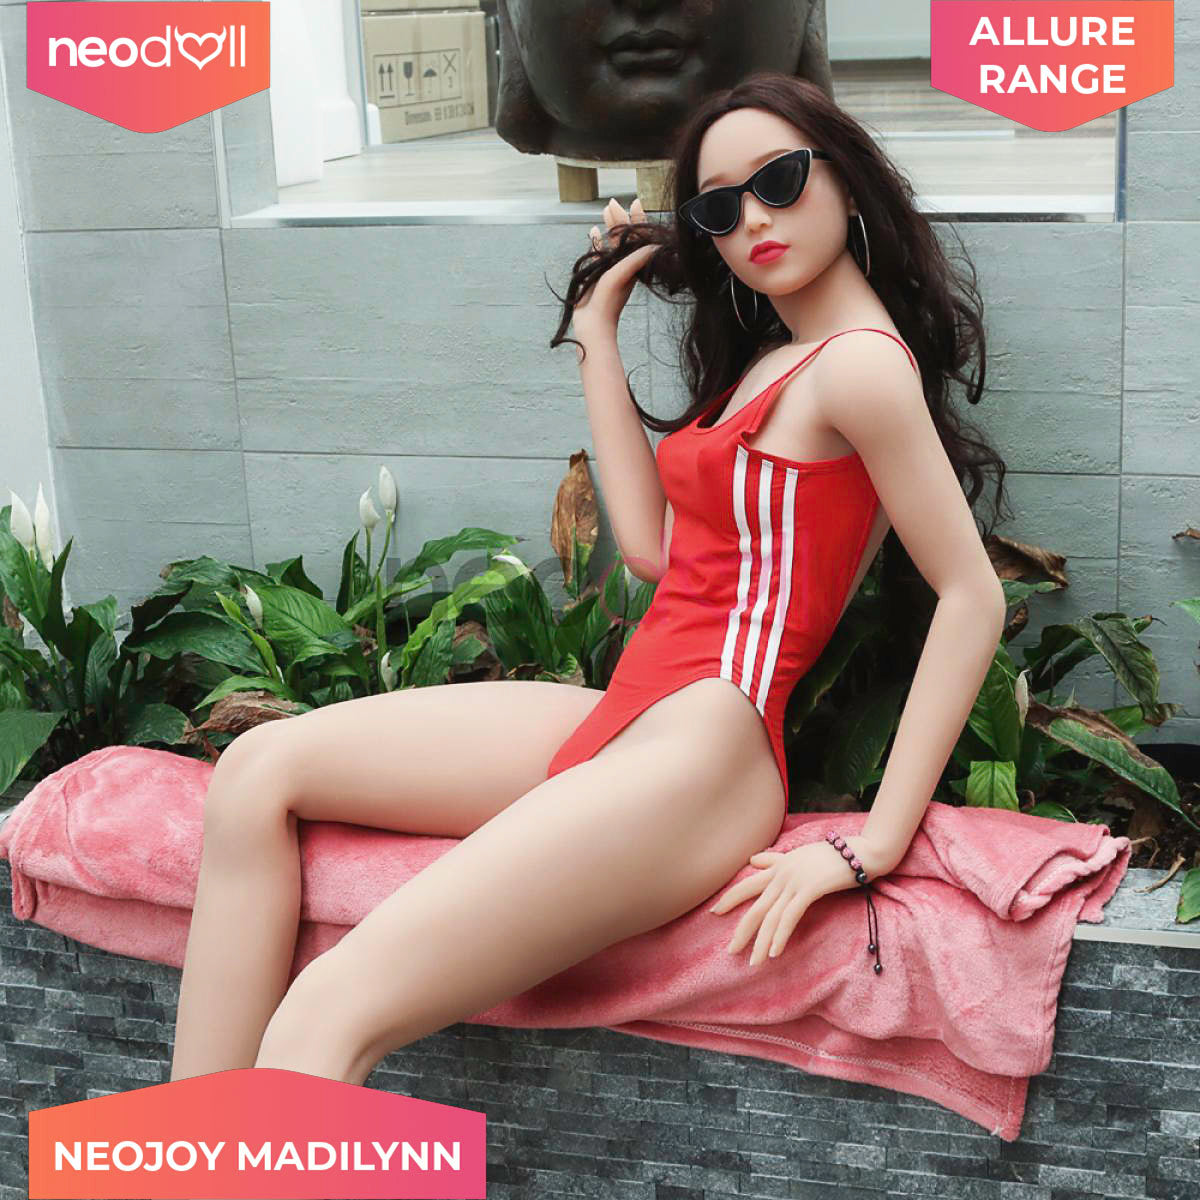 Sex Doll Madilynn | 170cm Height | Tan Skin | Shrug & Standing | Neodoll Allure